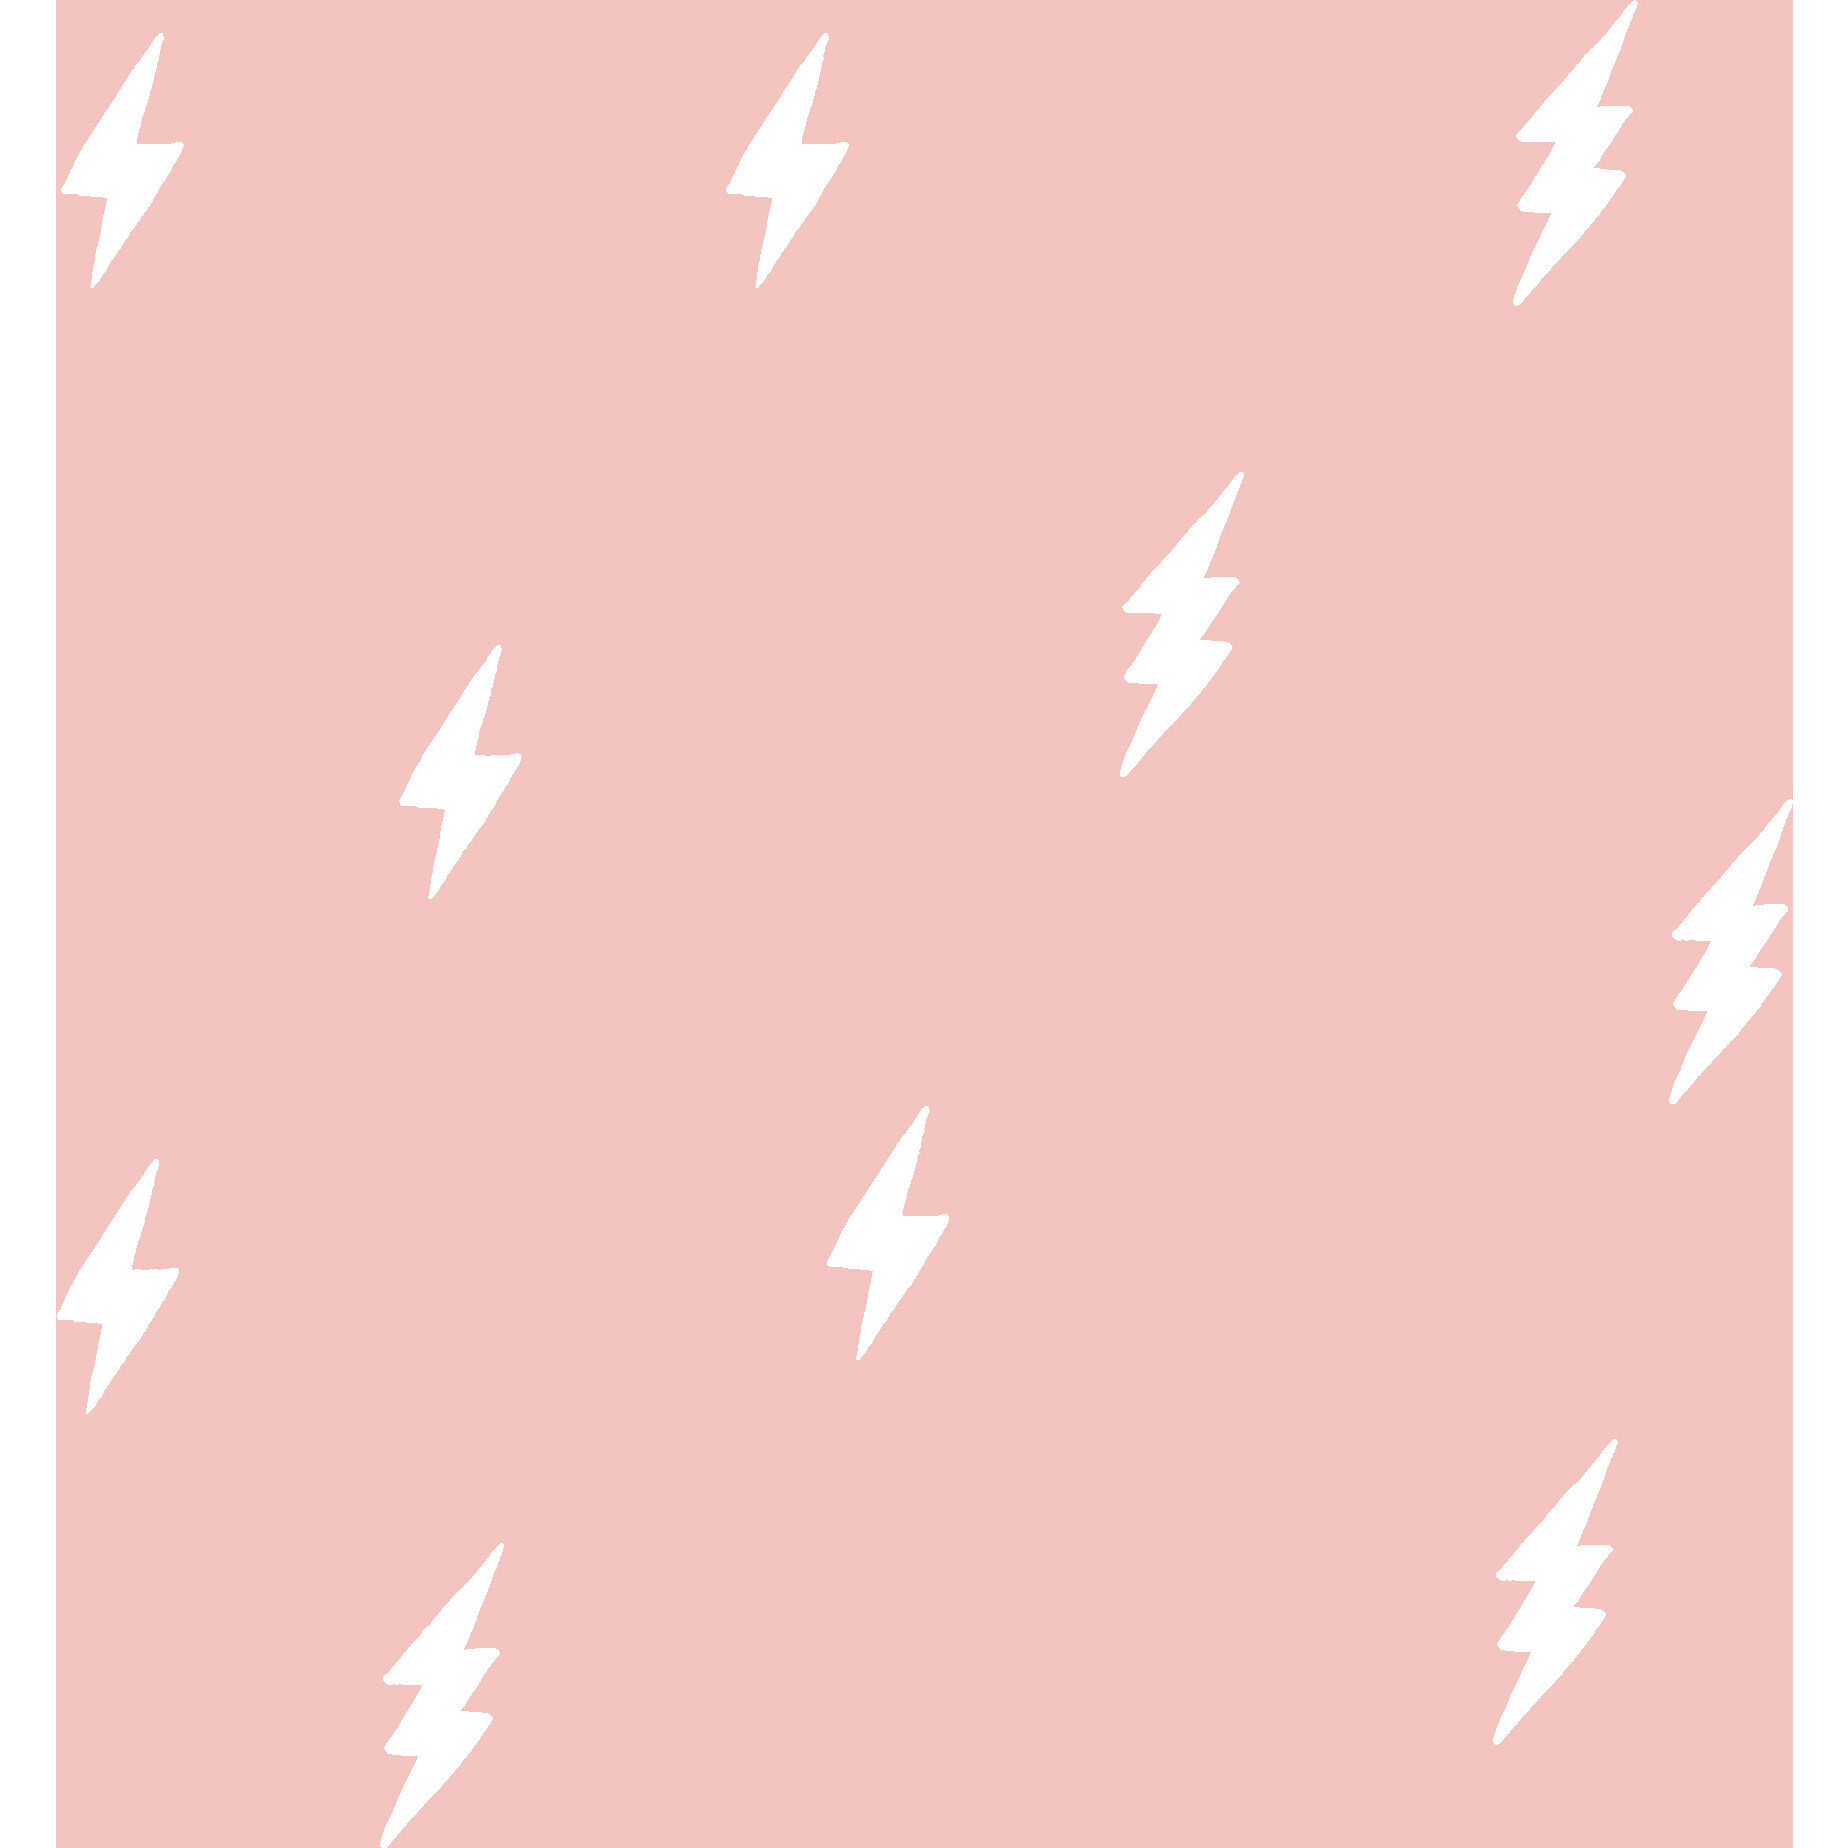 Hình nền giấy dán tường sọc họa tiết trơn màu hồng từ Tea Collection - Chiếc điện thoại của bạn sẽ trở nên thật sự độc đáo và tinh tế với hình nền giấy dán tường từ Tea Collection. Màu hồng tươi sáng của họa tiết Zeus Lightning sẽ làm bạn thích thú từ lần đầu tiên sử dụng. Được gỡ dễ dàng, bạn có thể thay đổi không gian bên trong điện thoại bất cứ lúc nào.